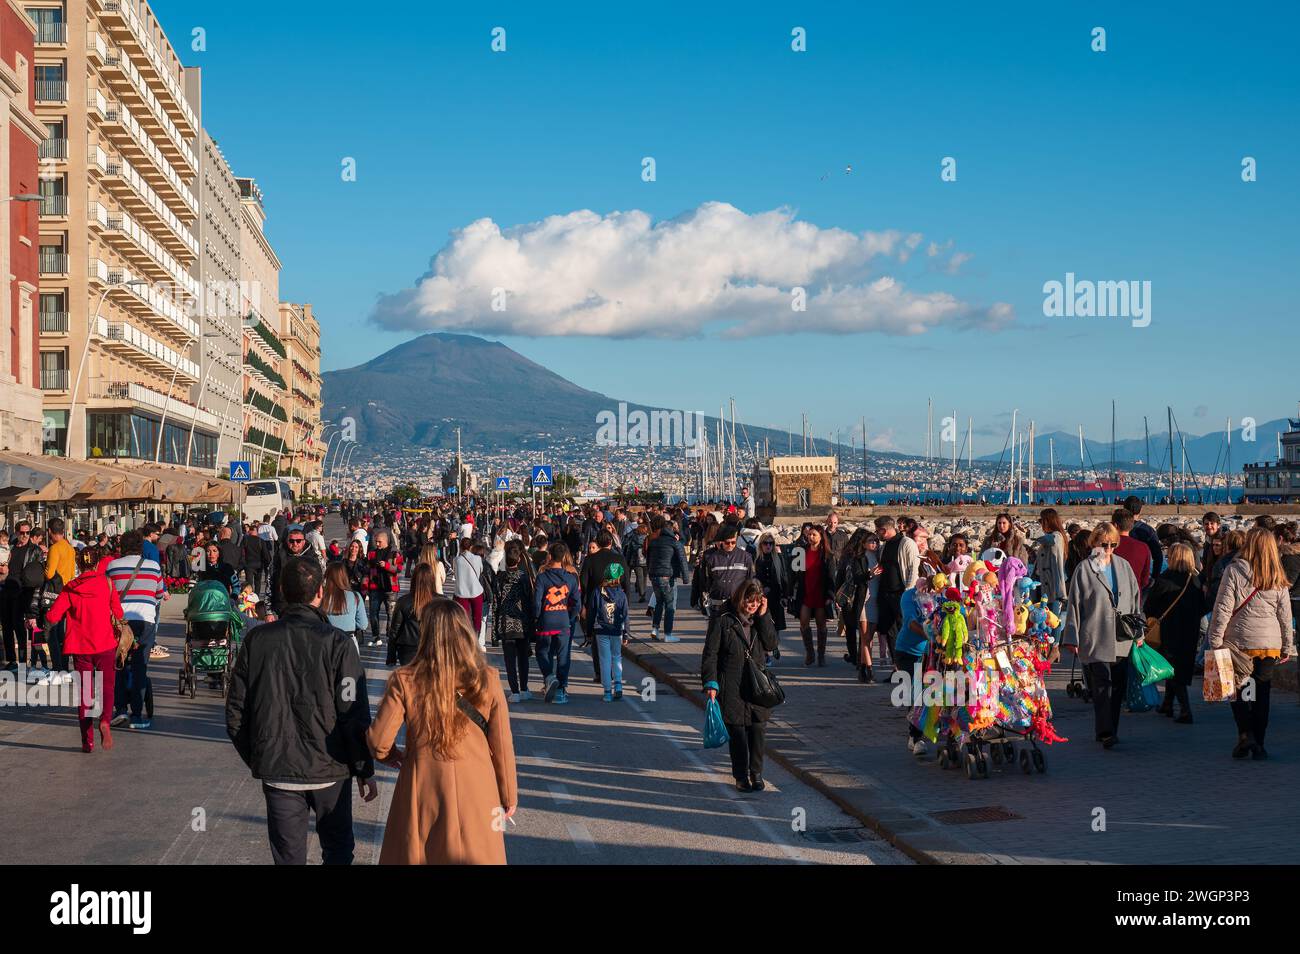 Napoli, Italia - 18 dicembre 2022: Una folla affollata di turisti e residenti che camminano di fronte a un maestoso vulcano del Vesuvio sullo sfondo Foto Stock